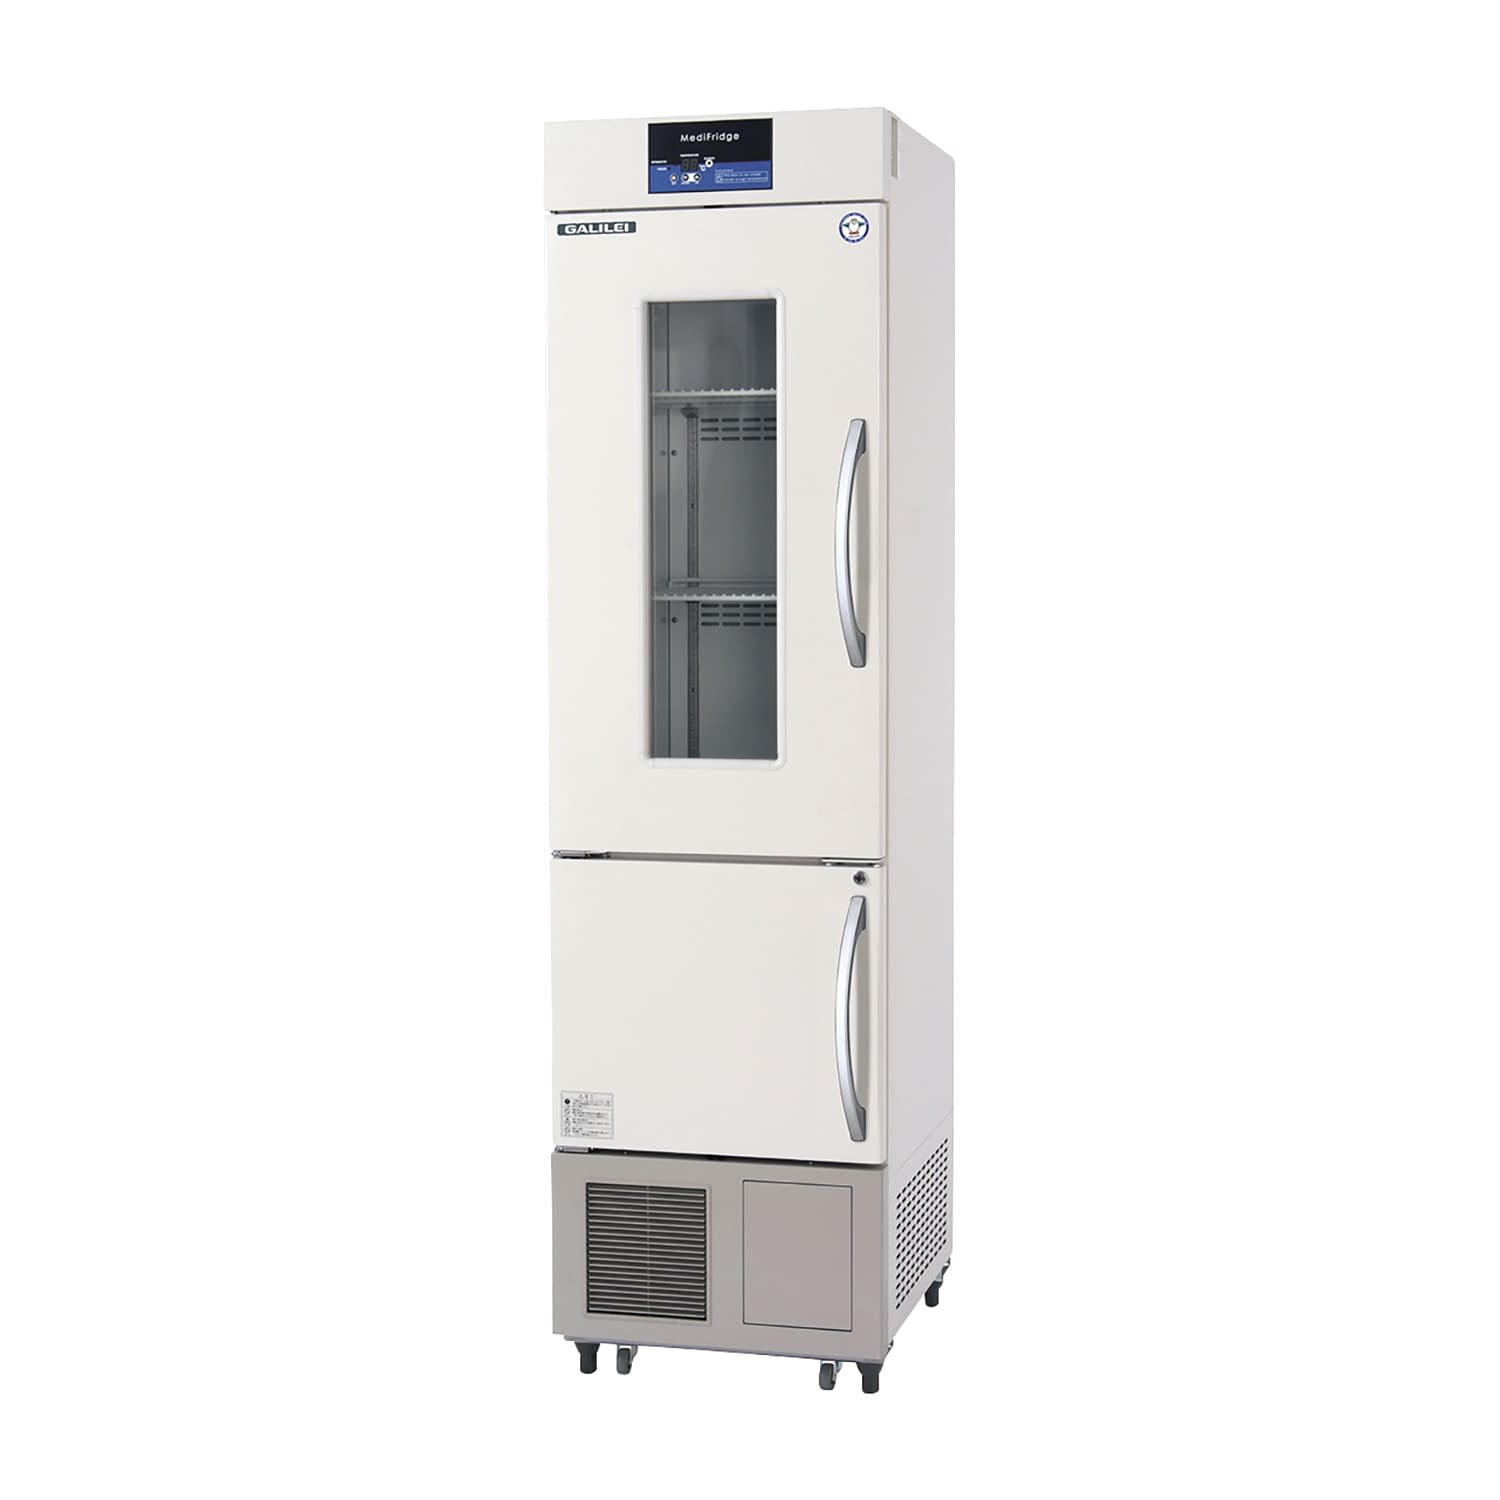 薬用冷凍冷蔵庫 FMS-F405GX(176／481L) 1台 フクシマガリレイ アイボリー(標準色) カラーブラウン25-5515-0202 保冷庫 検査室 薬用保冷庫